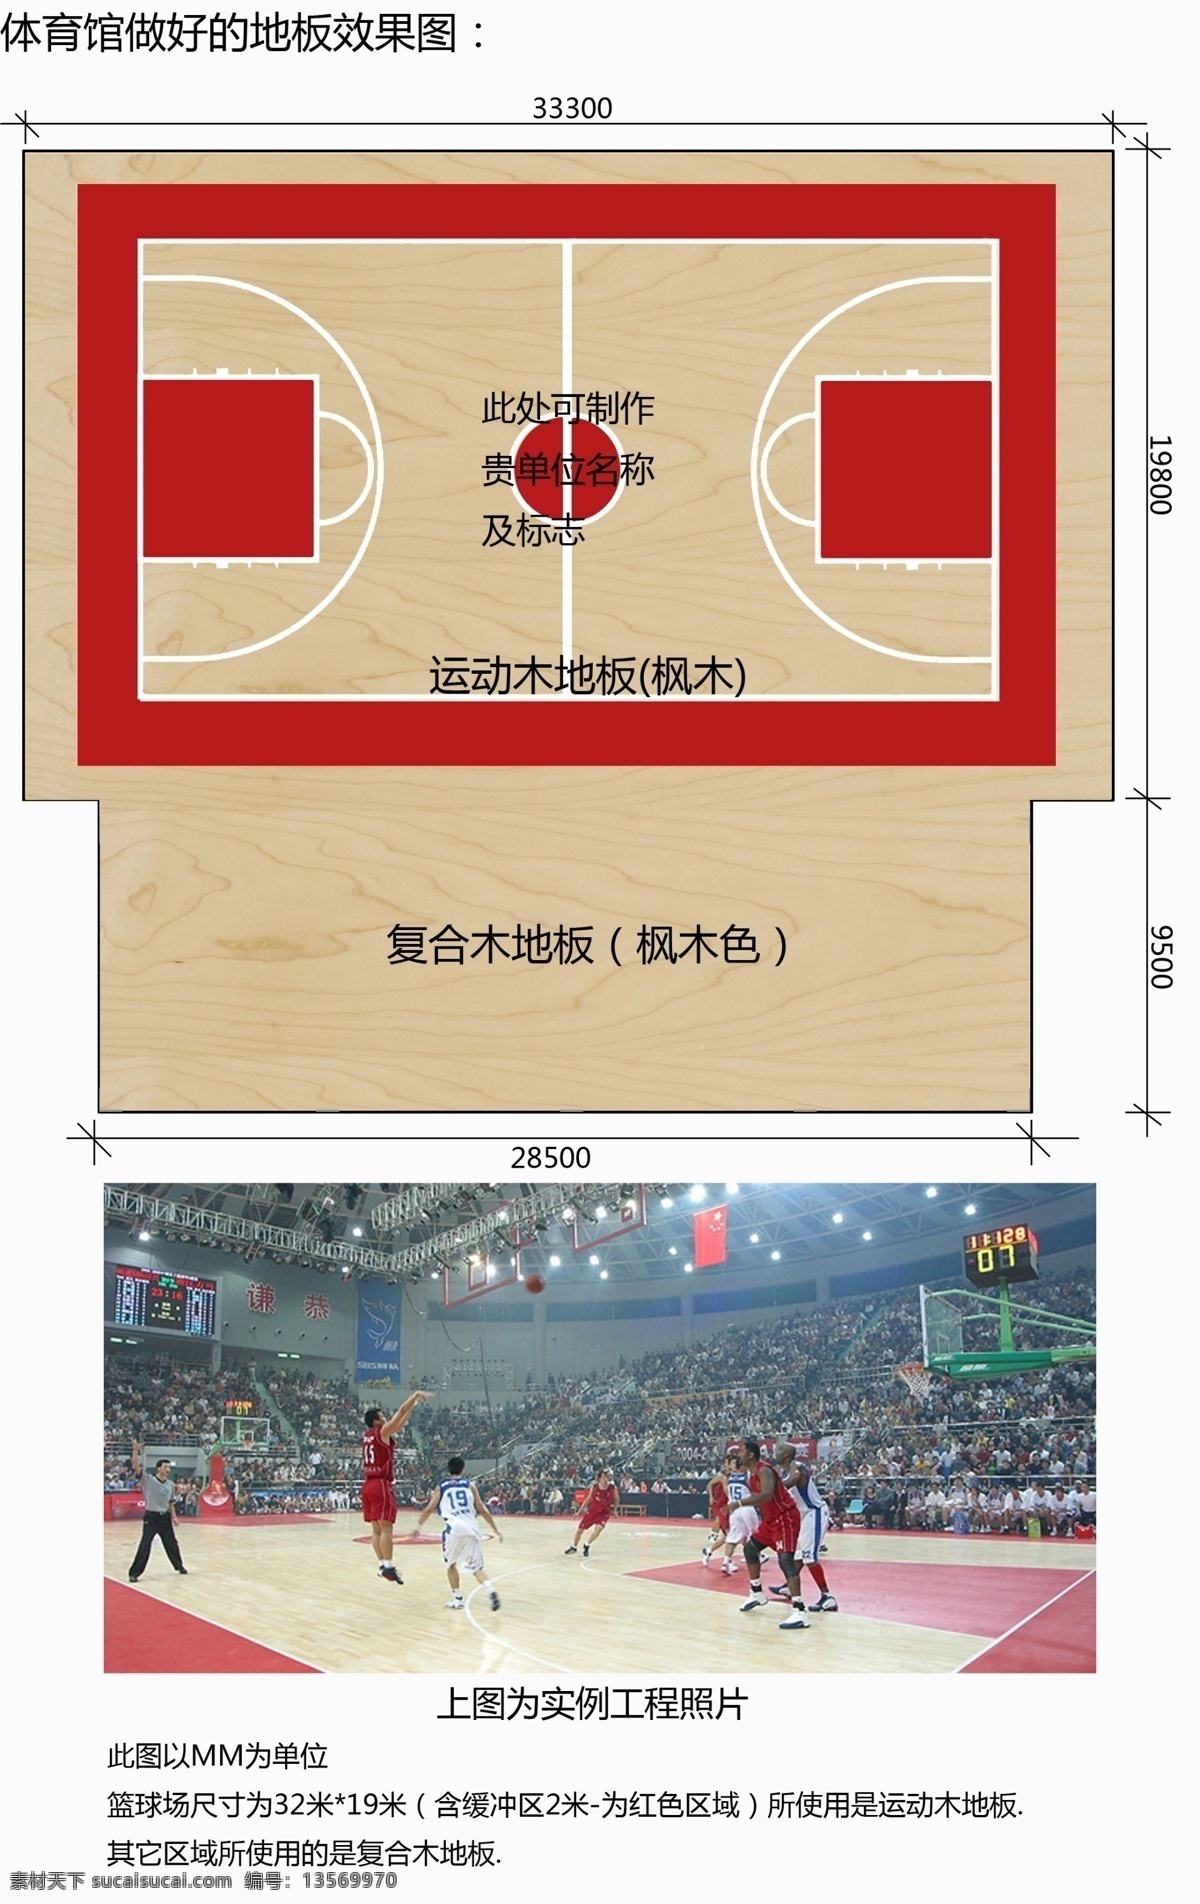 篮球场 羽毛球场 篮球场设计图 木地板球场 球场施工工艺 木地板 球场 流程 穗体球场 广告设计模板 源文件